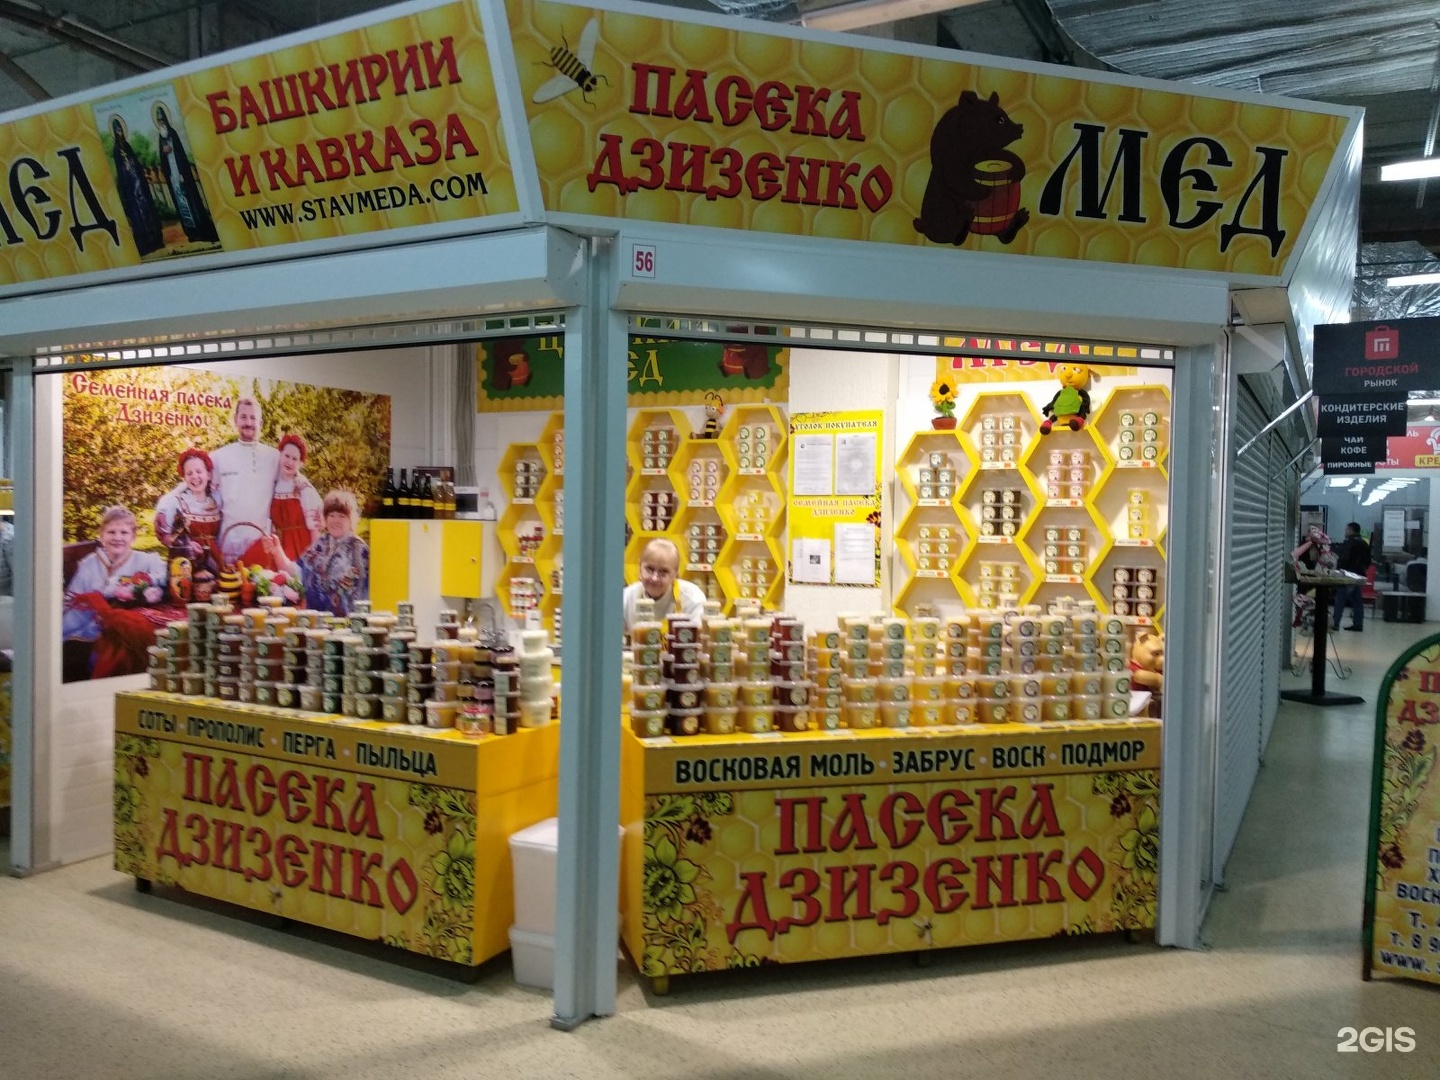 Магазин продуктов пчеловодства. Пасека Дзизенко Ставрополь. Магазин товаров для пчеловодства. Вывеска продукты пчеловодства.